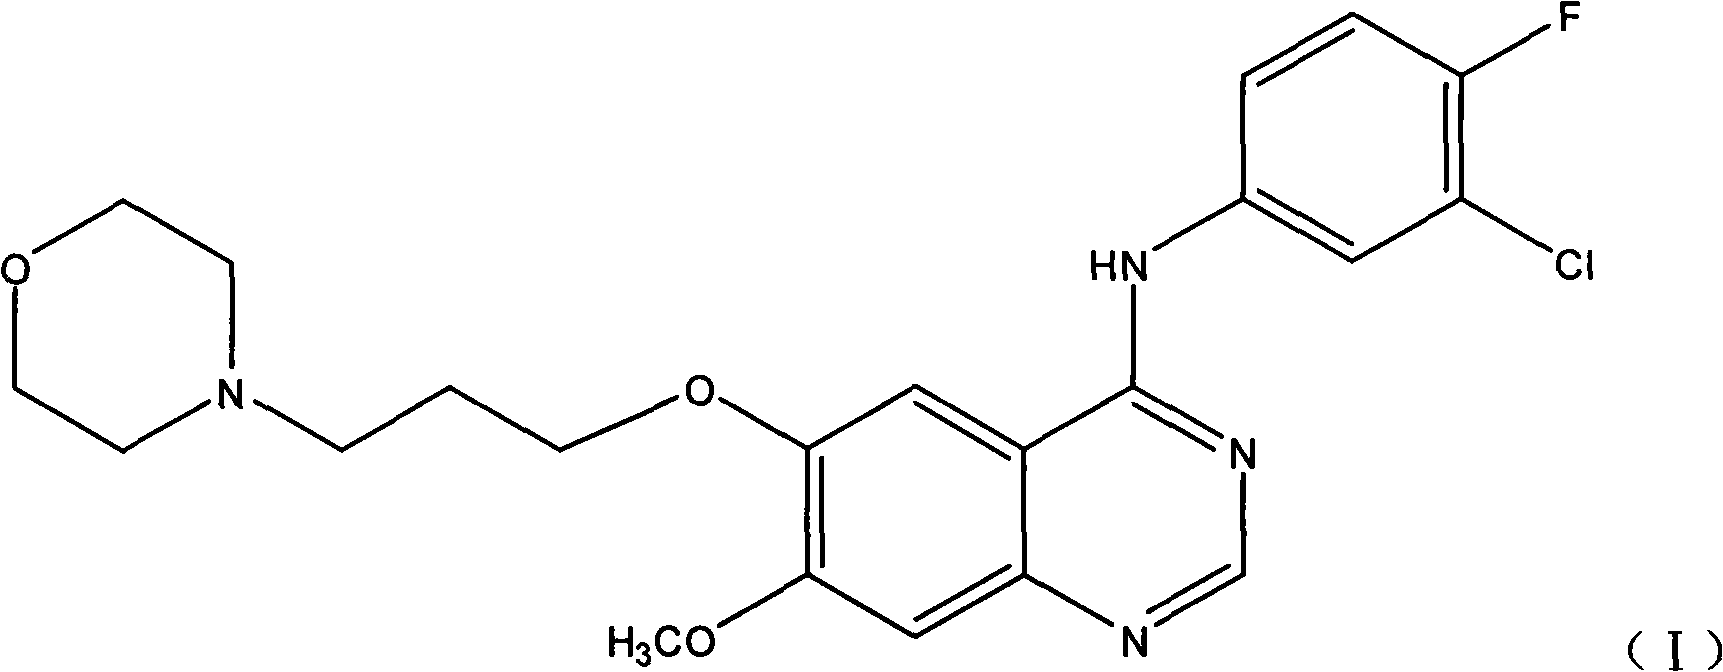 Method for preparing 4-(3-chlorine-4-fluorophenylalanine)-7-methoxy-6-[3-(4-morpholinyl) propoxy] quinazoline